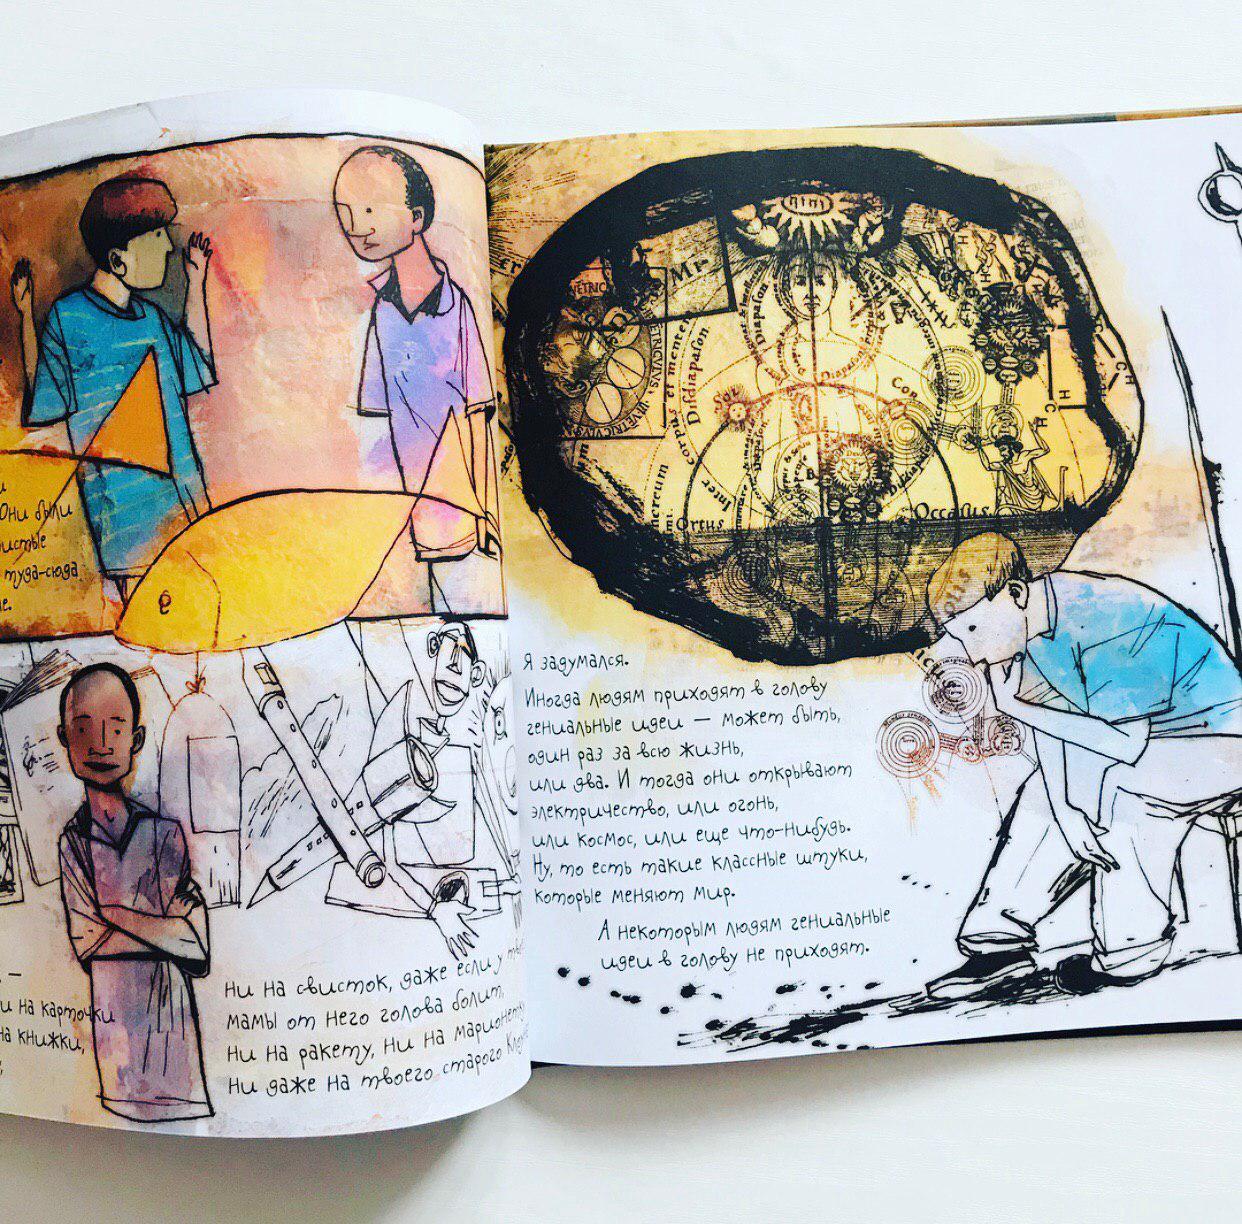 Рисунки для мамы: трогательные семейные истории хиринцев в детском творчестве